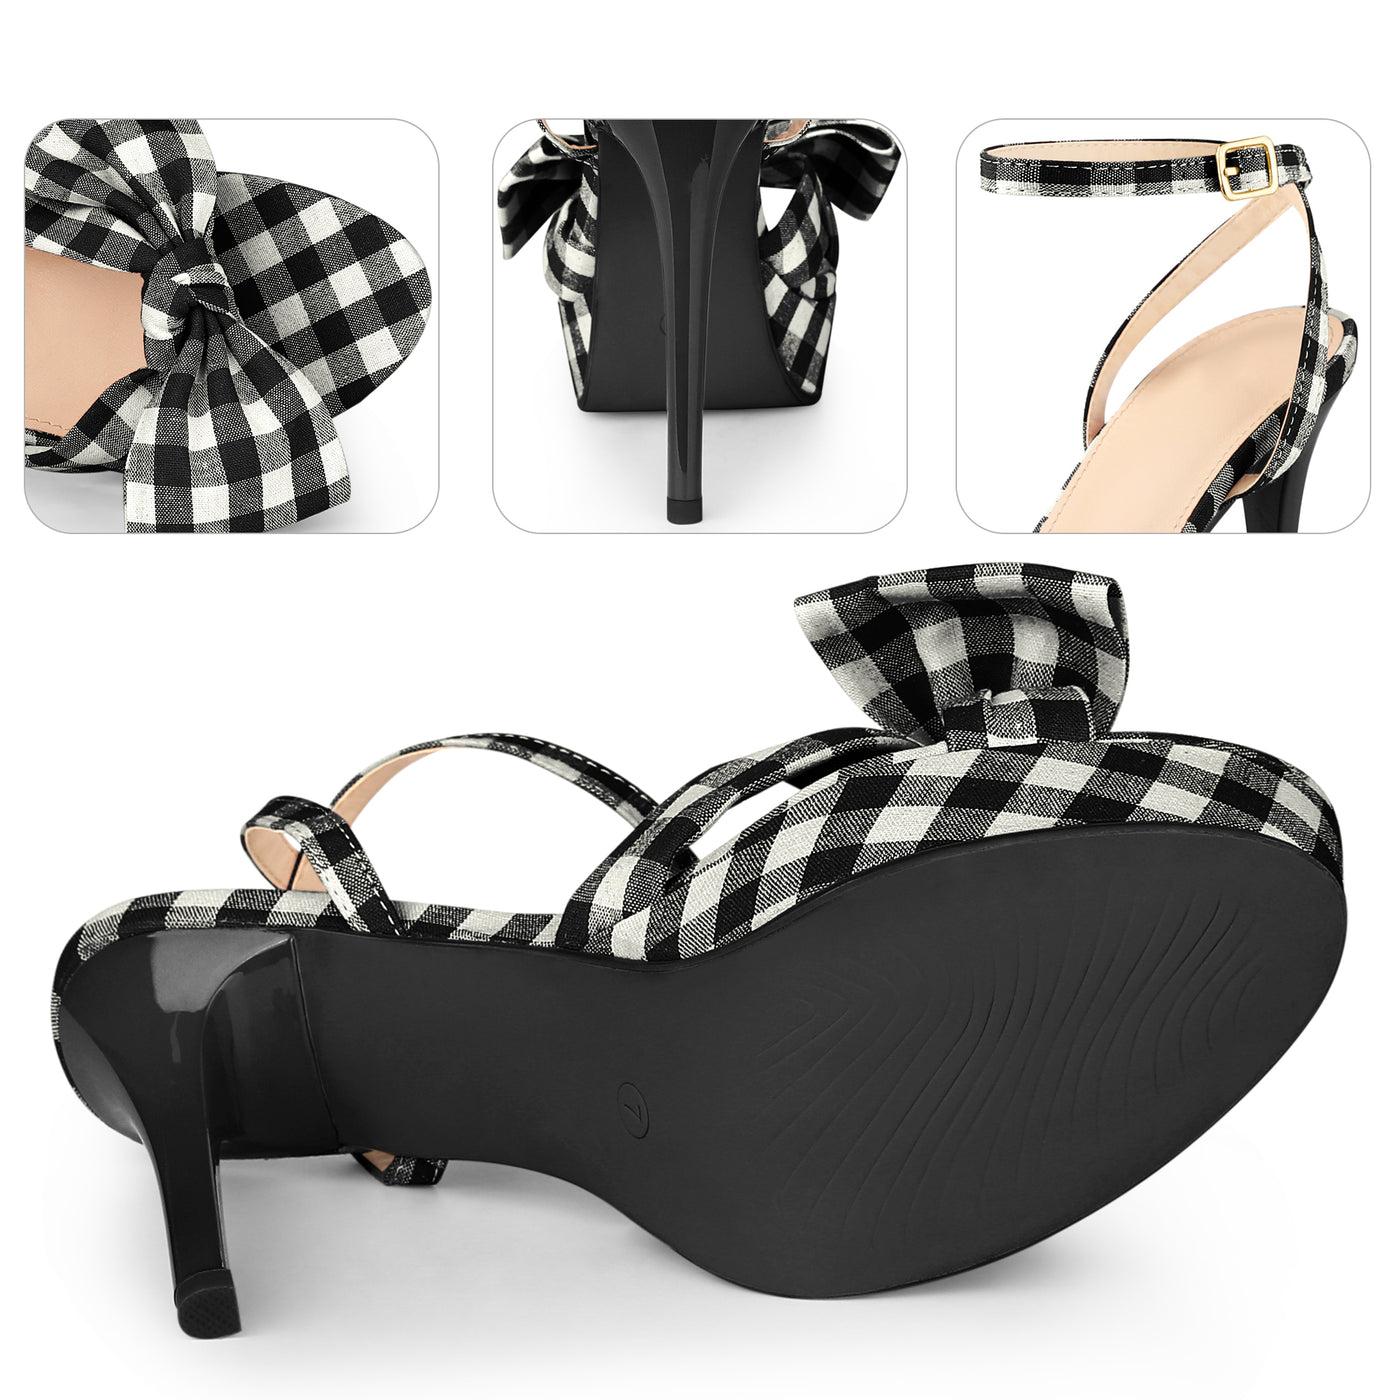 Bublédon Bow Stiletto Heel Plaid Sandals for Women